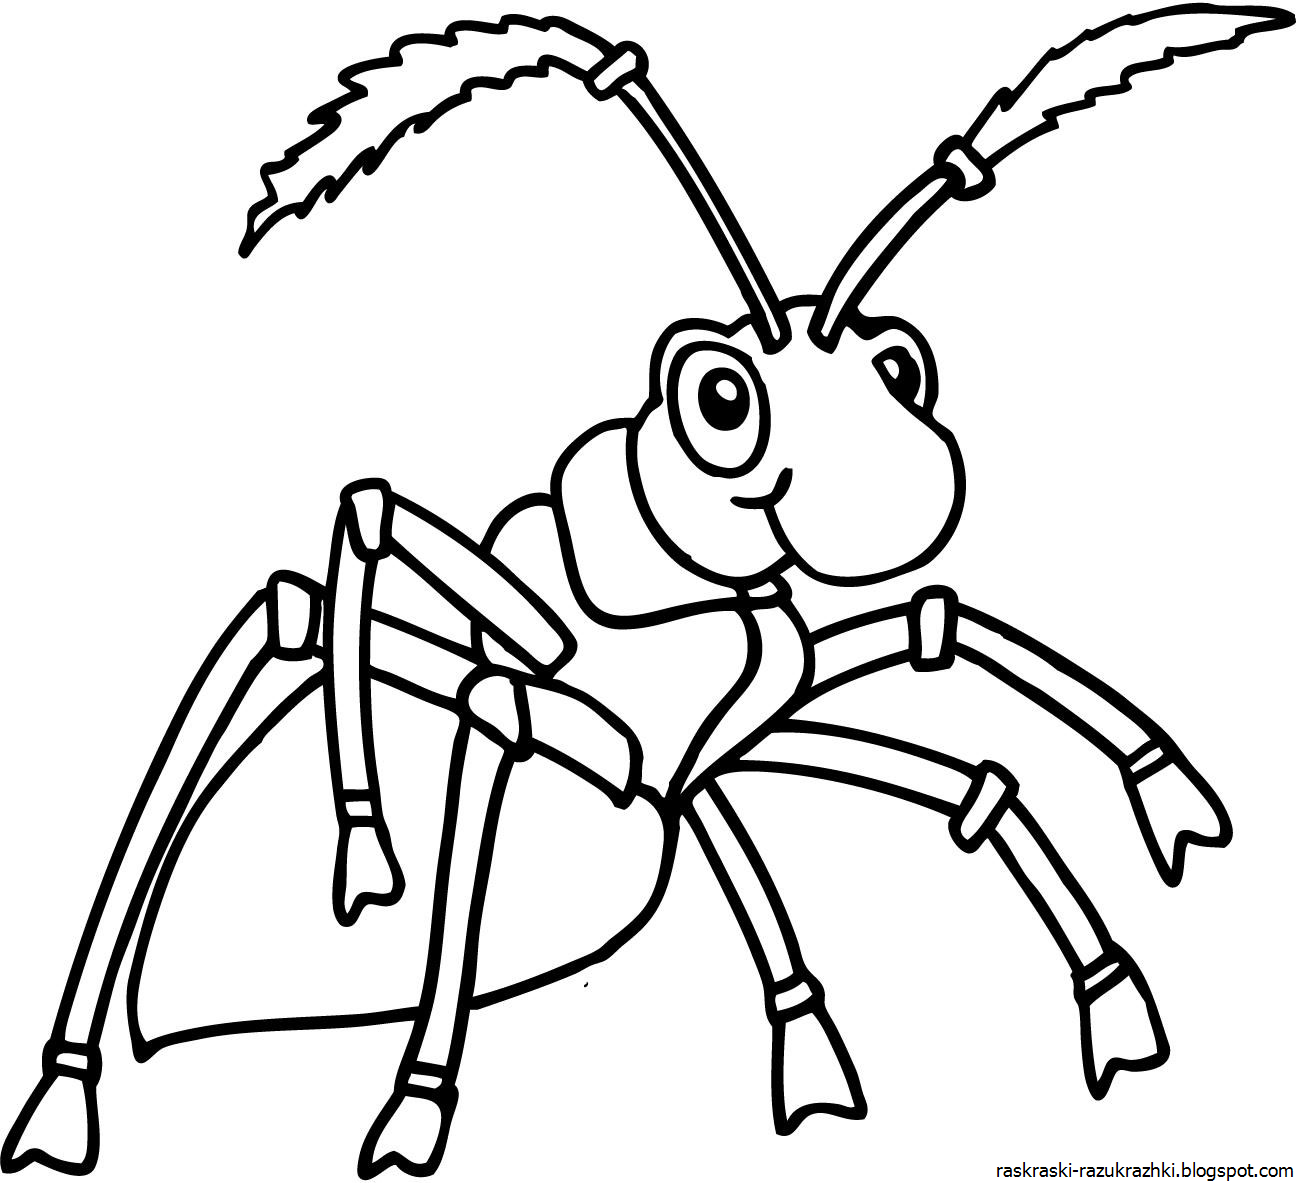 Трафарет муравья для рисования